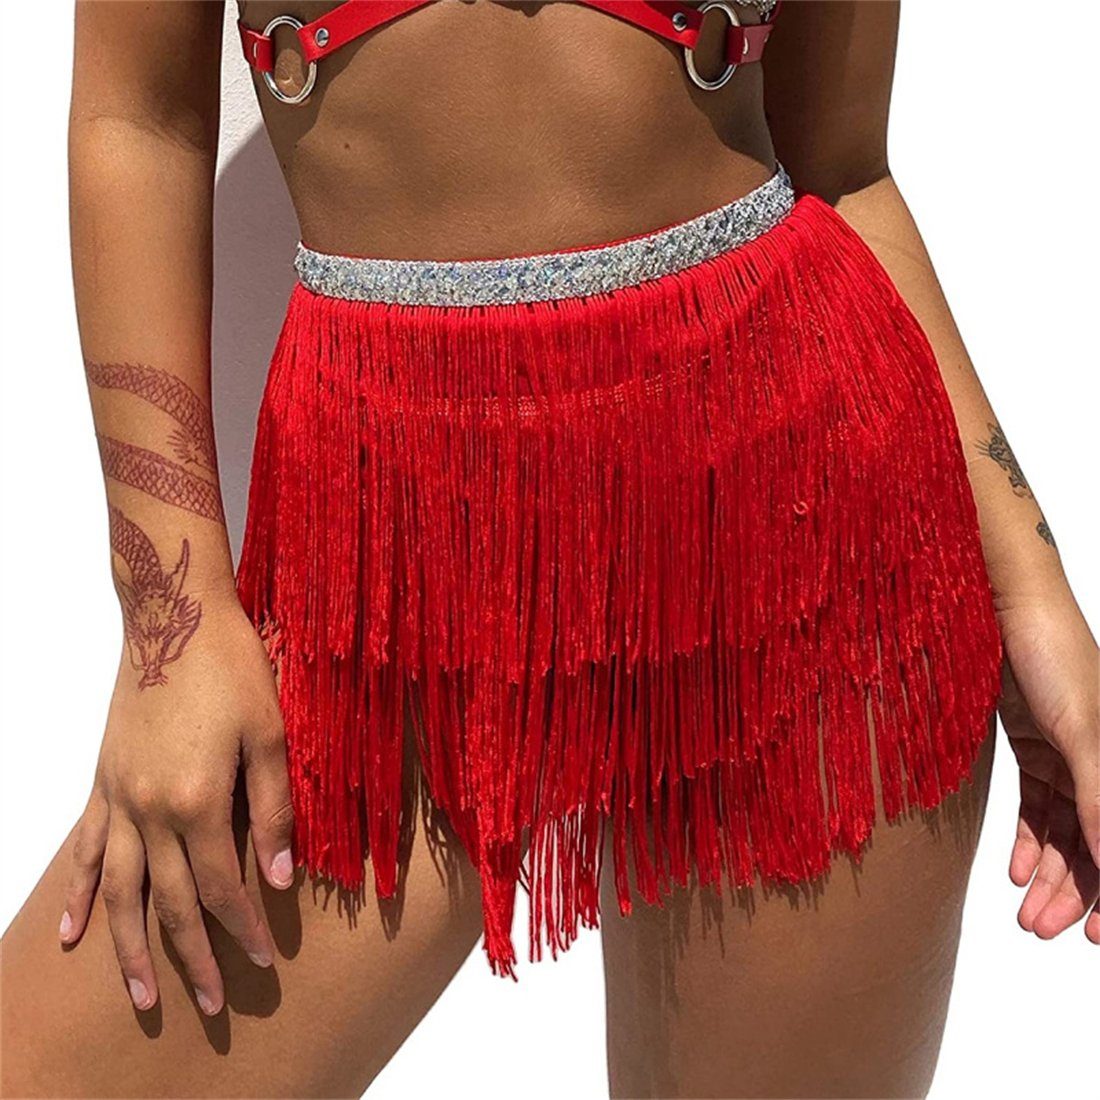 YOOdy~ Sommerrock strandrock damen sommer Minirock weibliche Körperkette Bauchtanz für Abschlussball, Party,festliche,Karneval,Feiern Rot